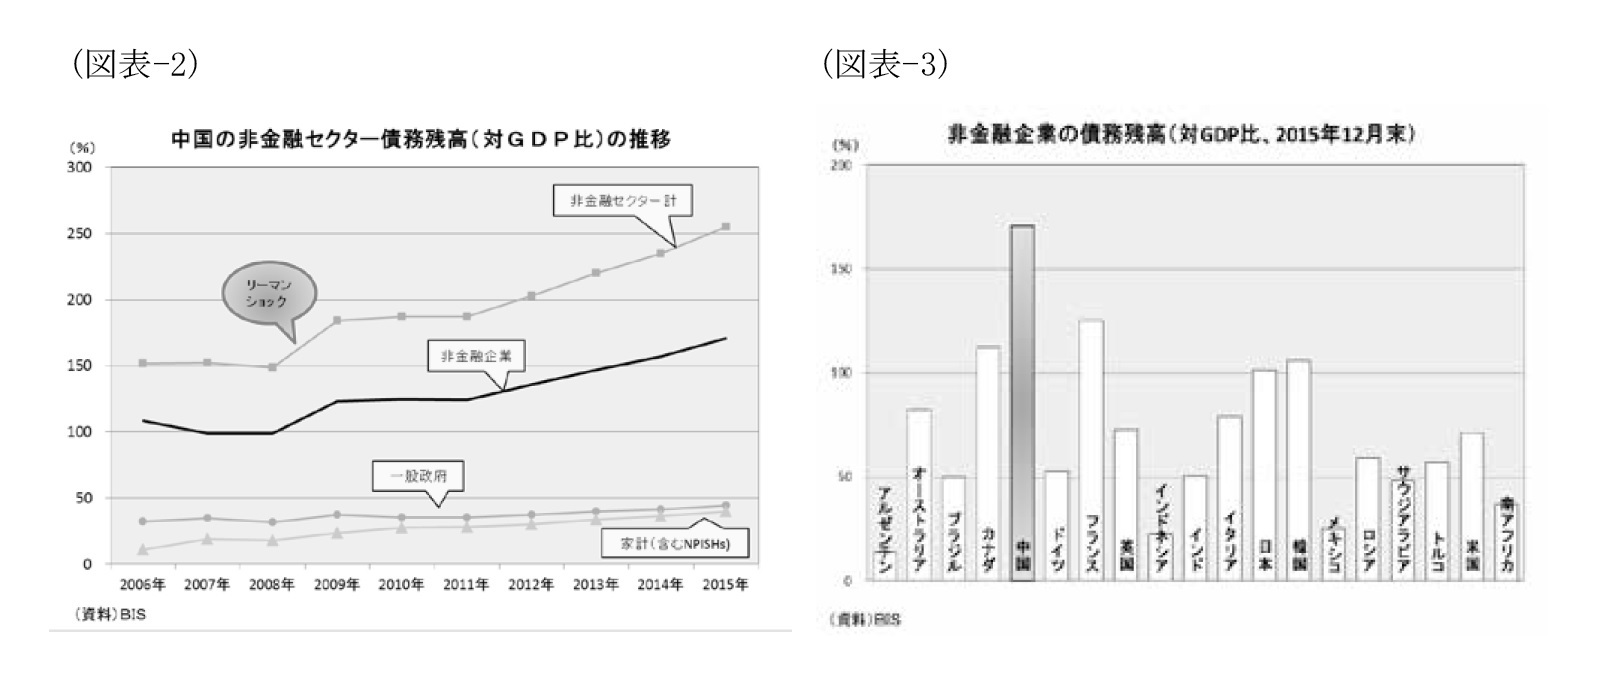 （図表-2）中国の非金融セクター債務残高（対GDP比）の推移/（図表-3）非金融企業の債務残高（対GDP比、2015年12月末）